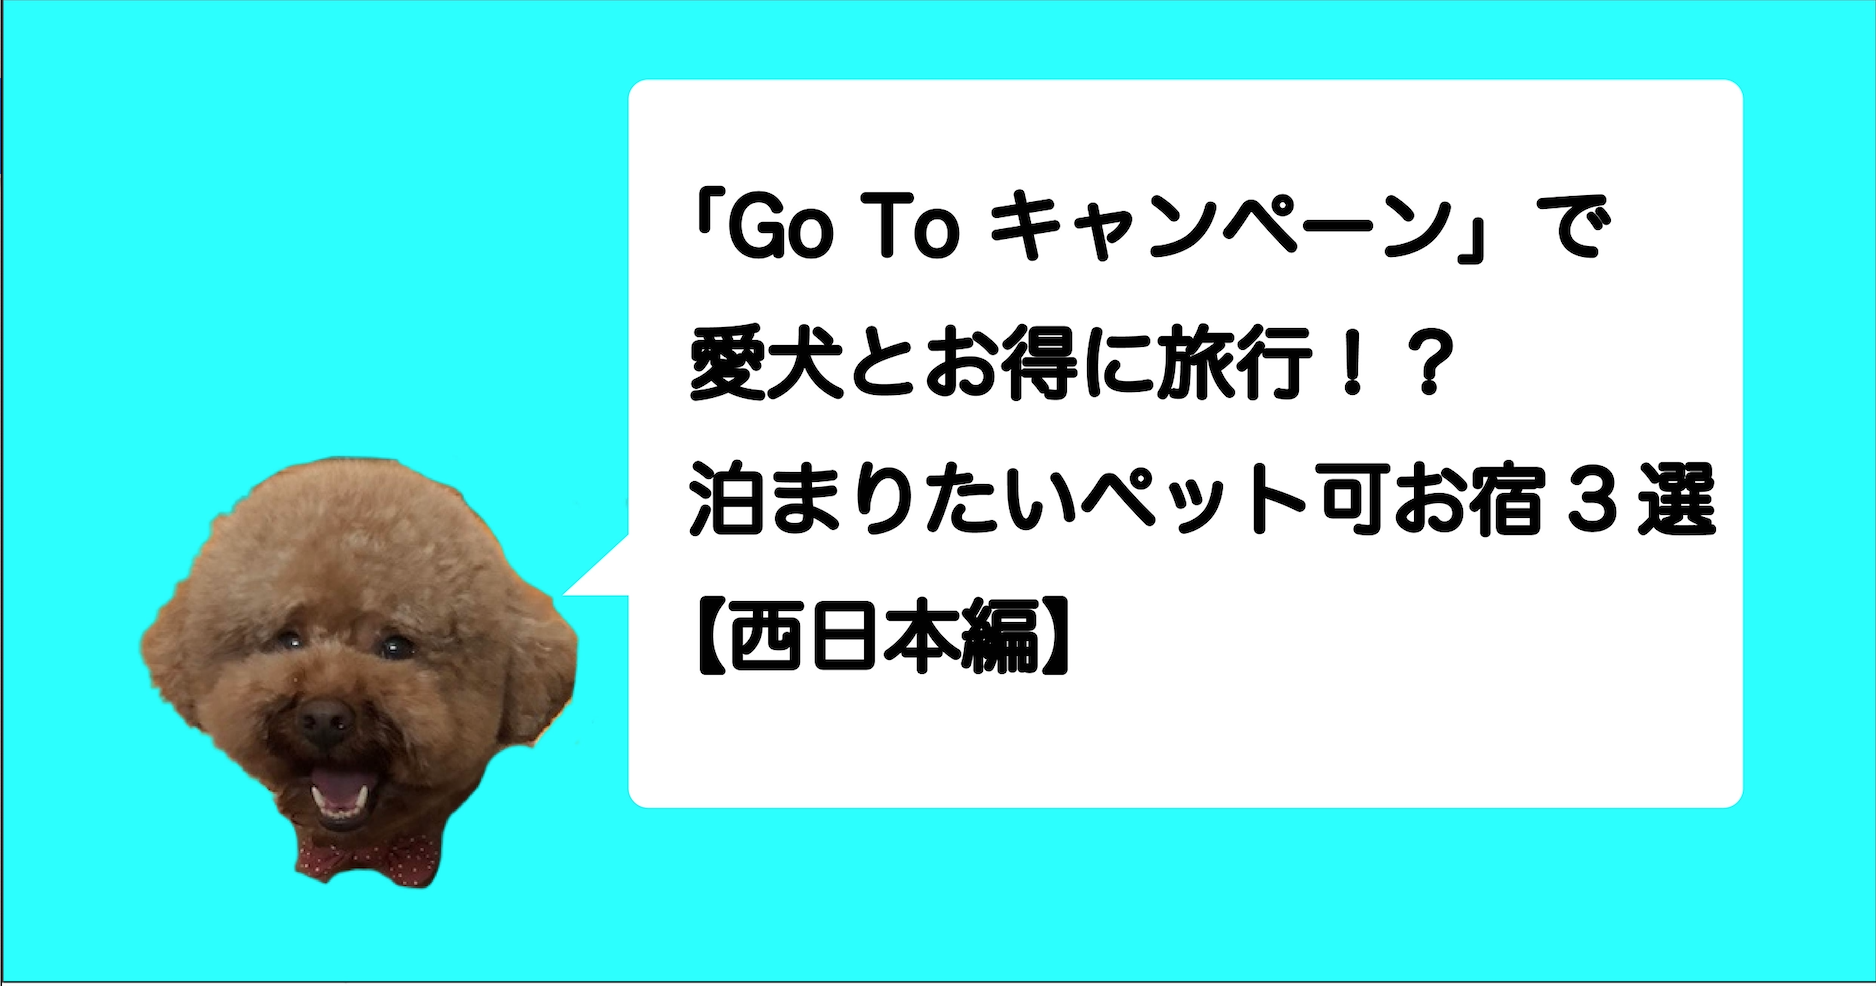 Go To キャンペーン で愛犬とお得に旅行 泊まりたいペット可お宿3選 西日本編 レオろぐ